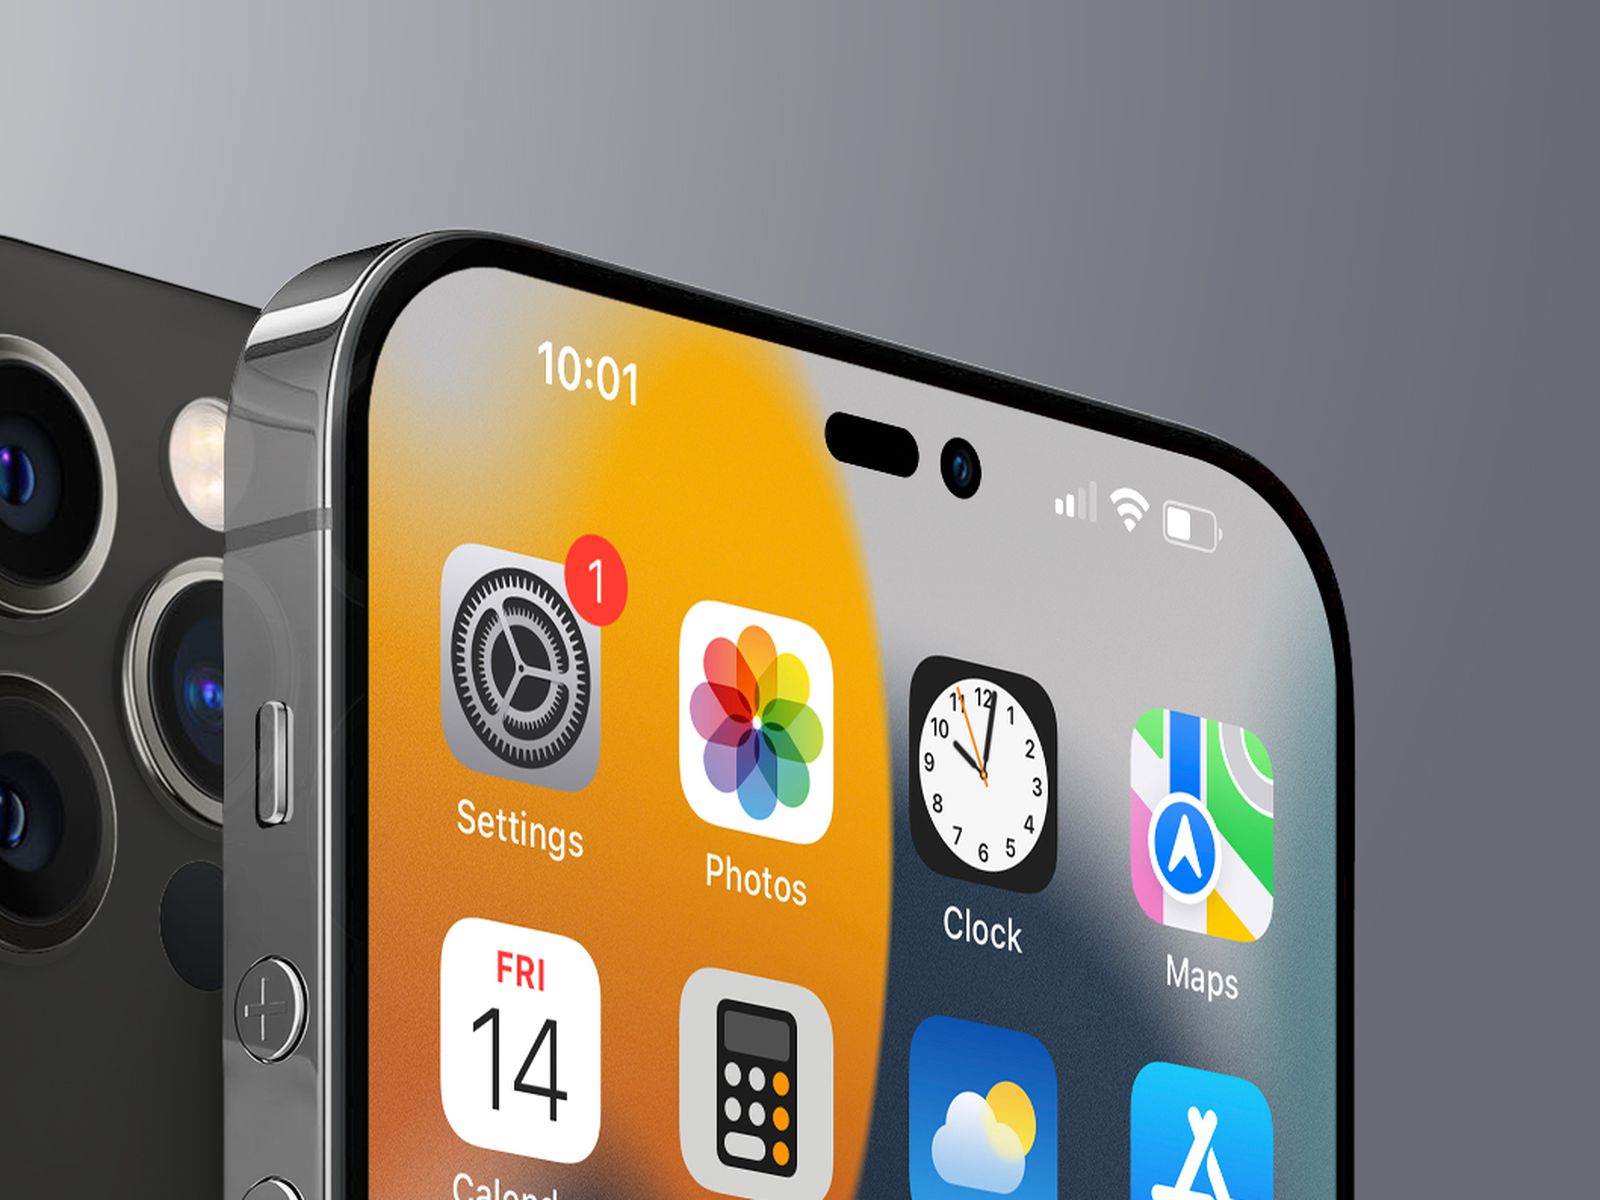 ProMotion là một tính năng đáng chú ý trên iPhone 13, giúp cho màn hình hiển thị đẹp hơn, mượt hơn và nhạy hơn. Bạn sẽ không muốn bỏ lỡ trải nghiệm tuyệt vời này, hãy cùng xem ảnh liên quan đến tính năng của iPhone